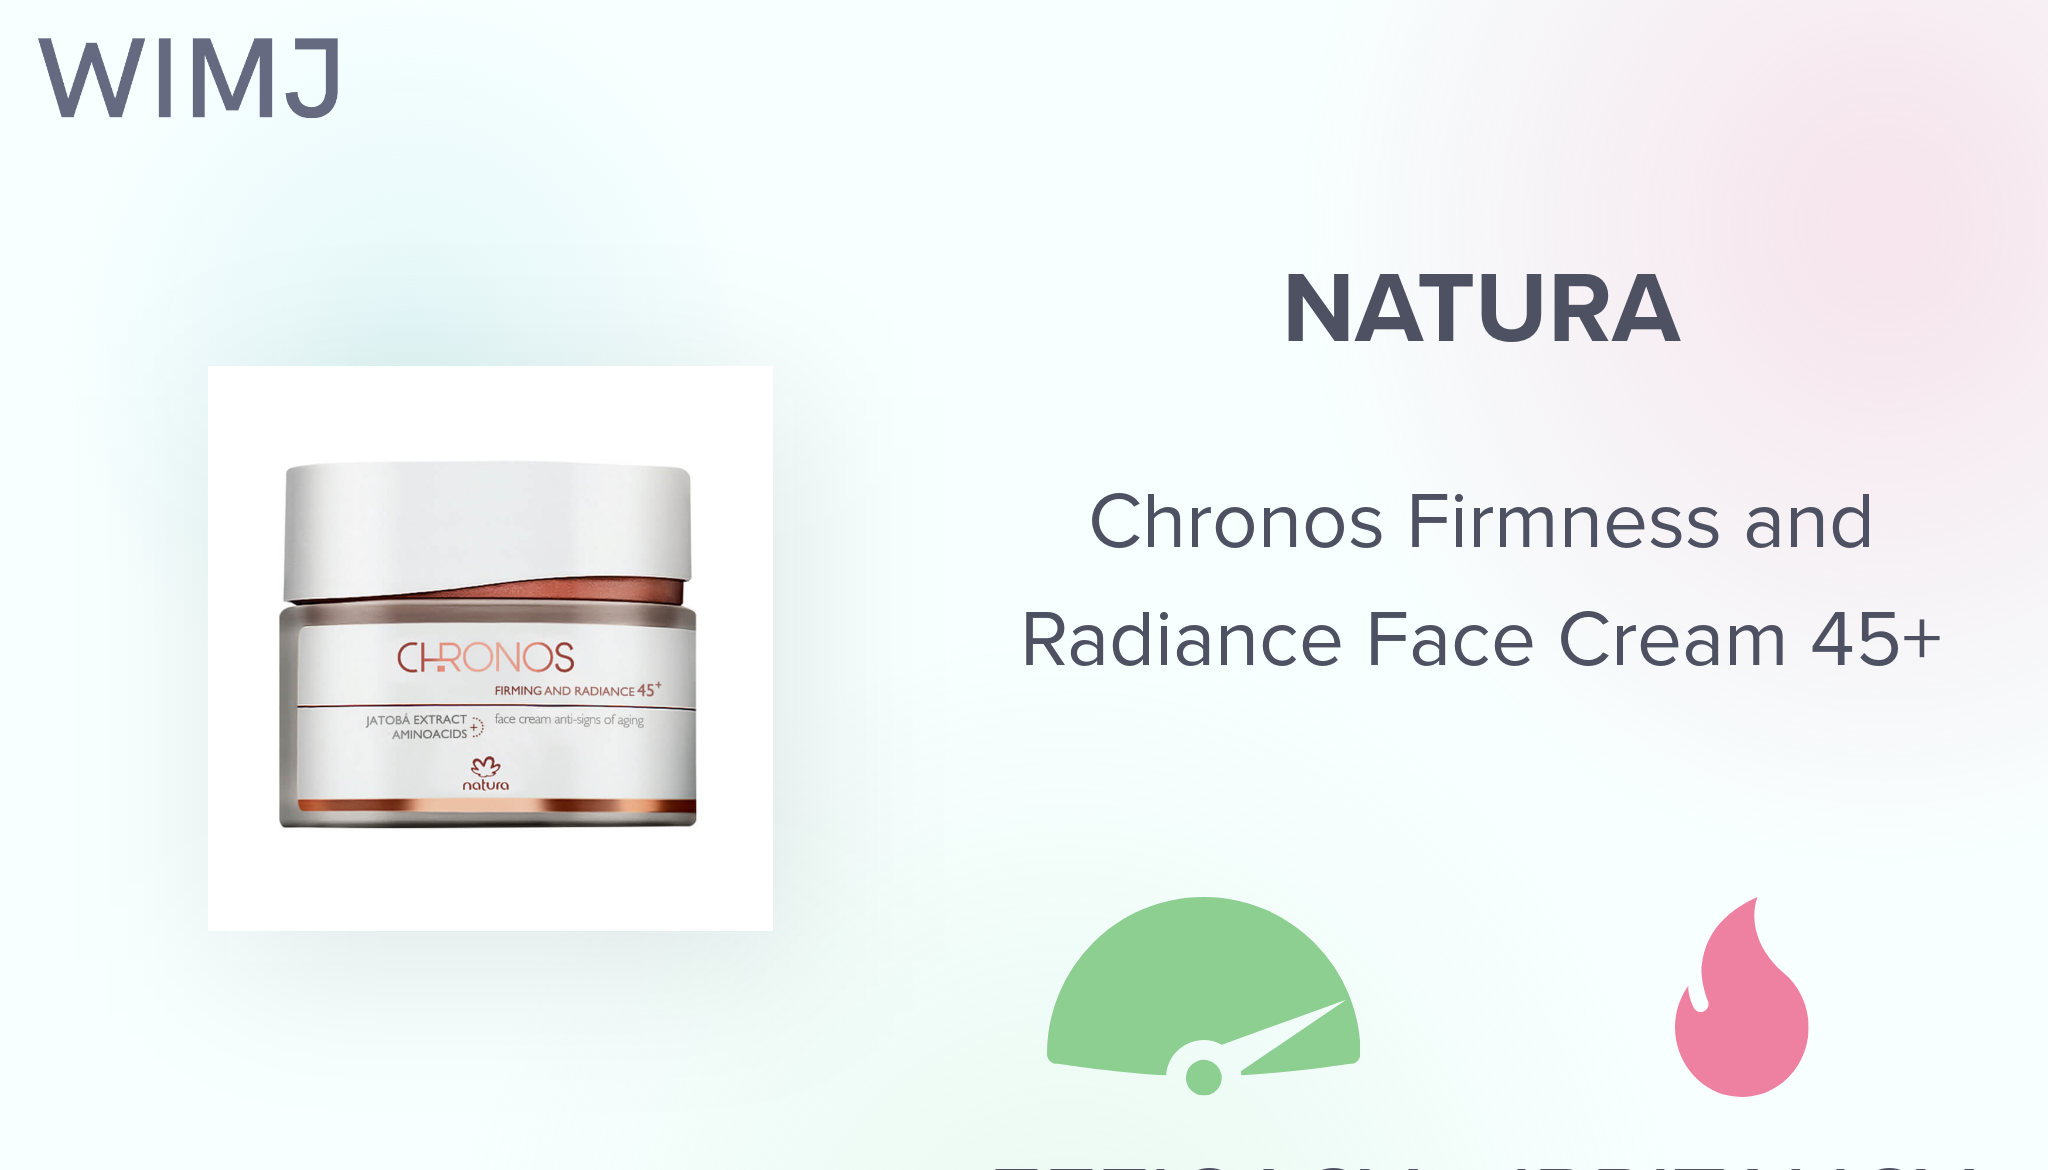 Review: Natura - Chronos Firmness and Radiance Face Cream 45+ - WIMJ